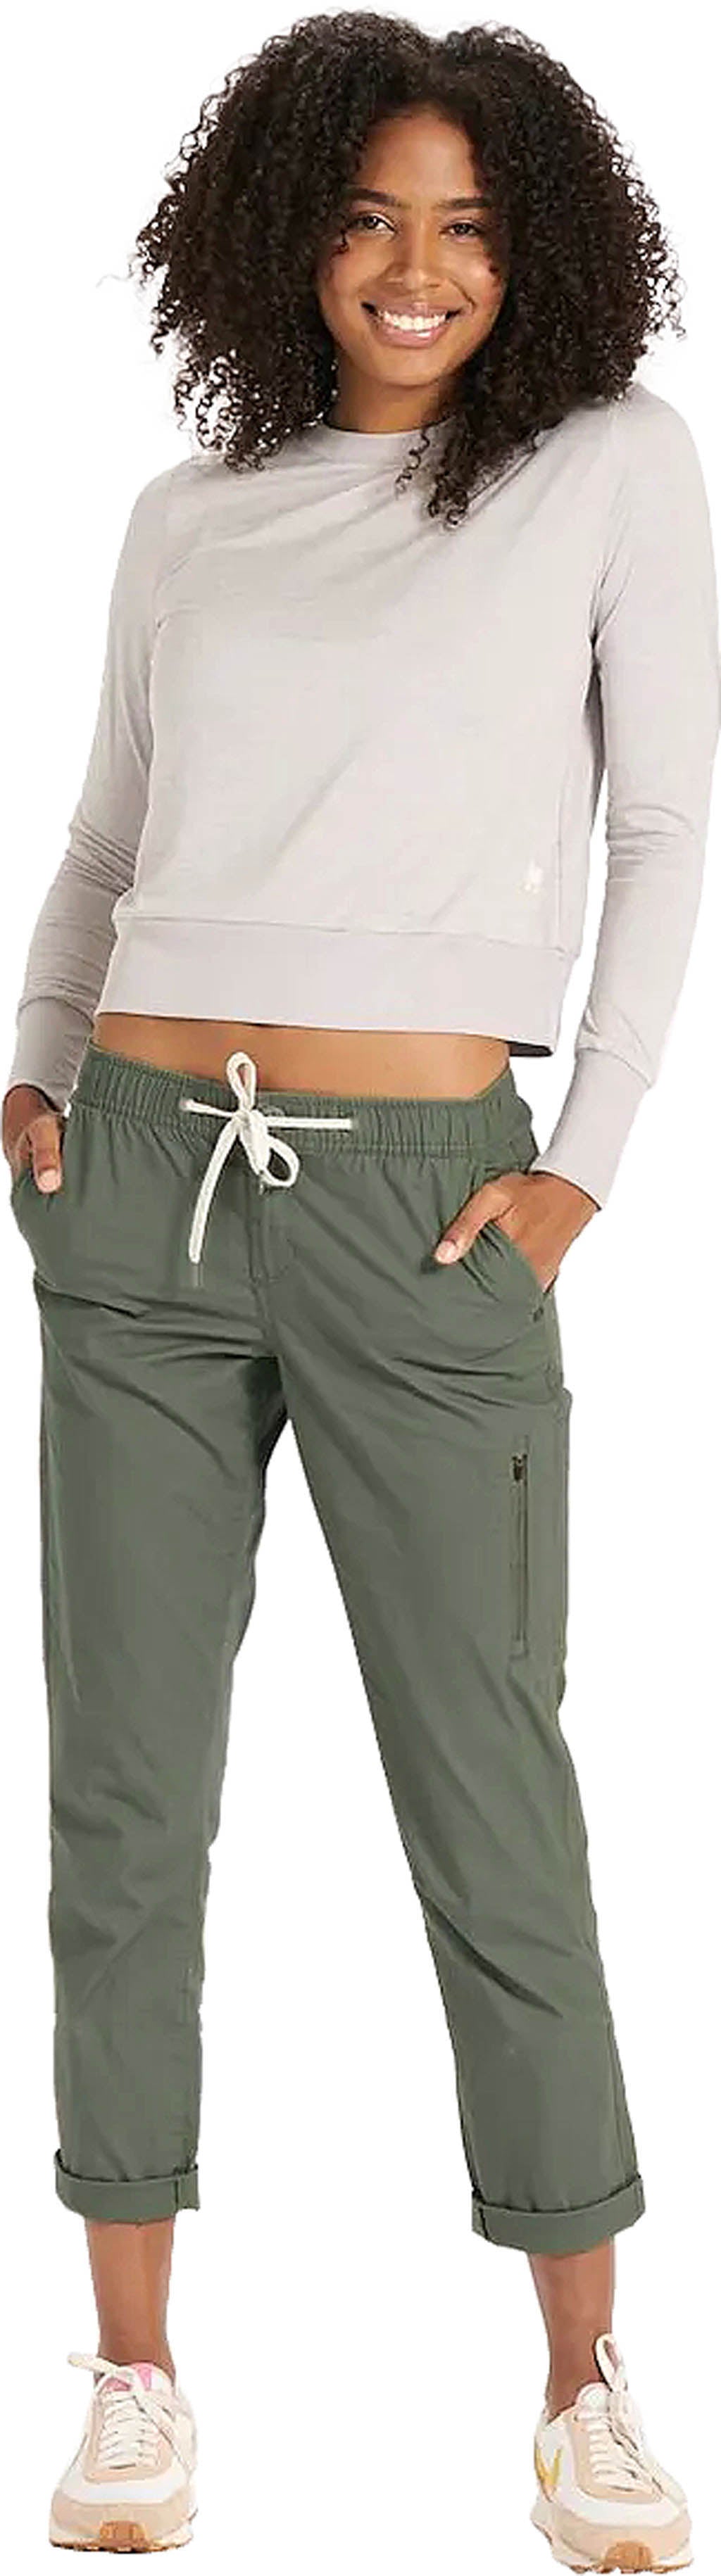 Vuori Womens Ripstop Pants, Army/Green, Medium